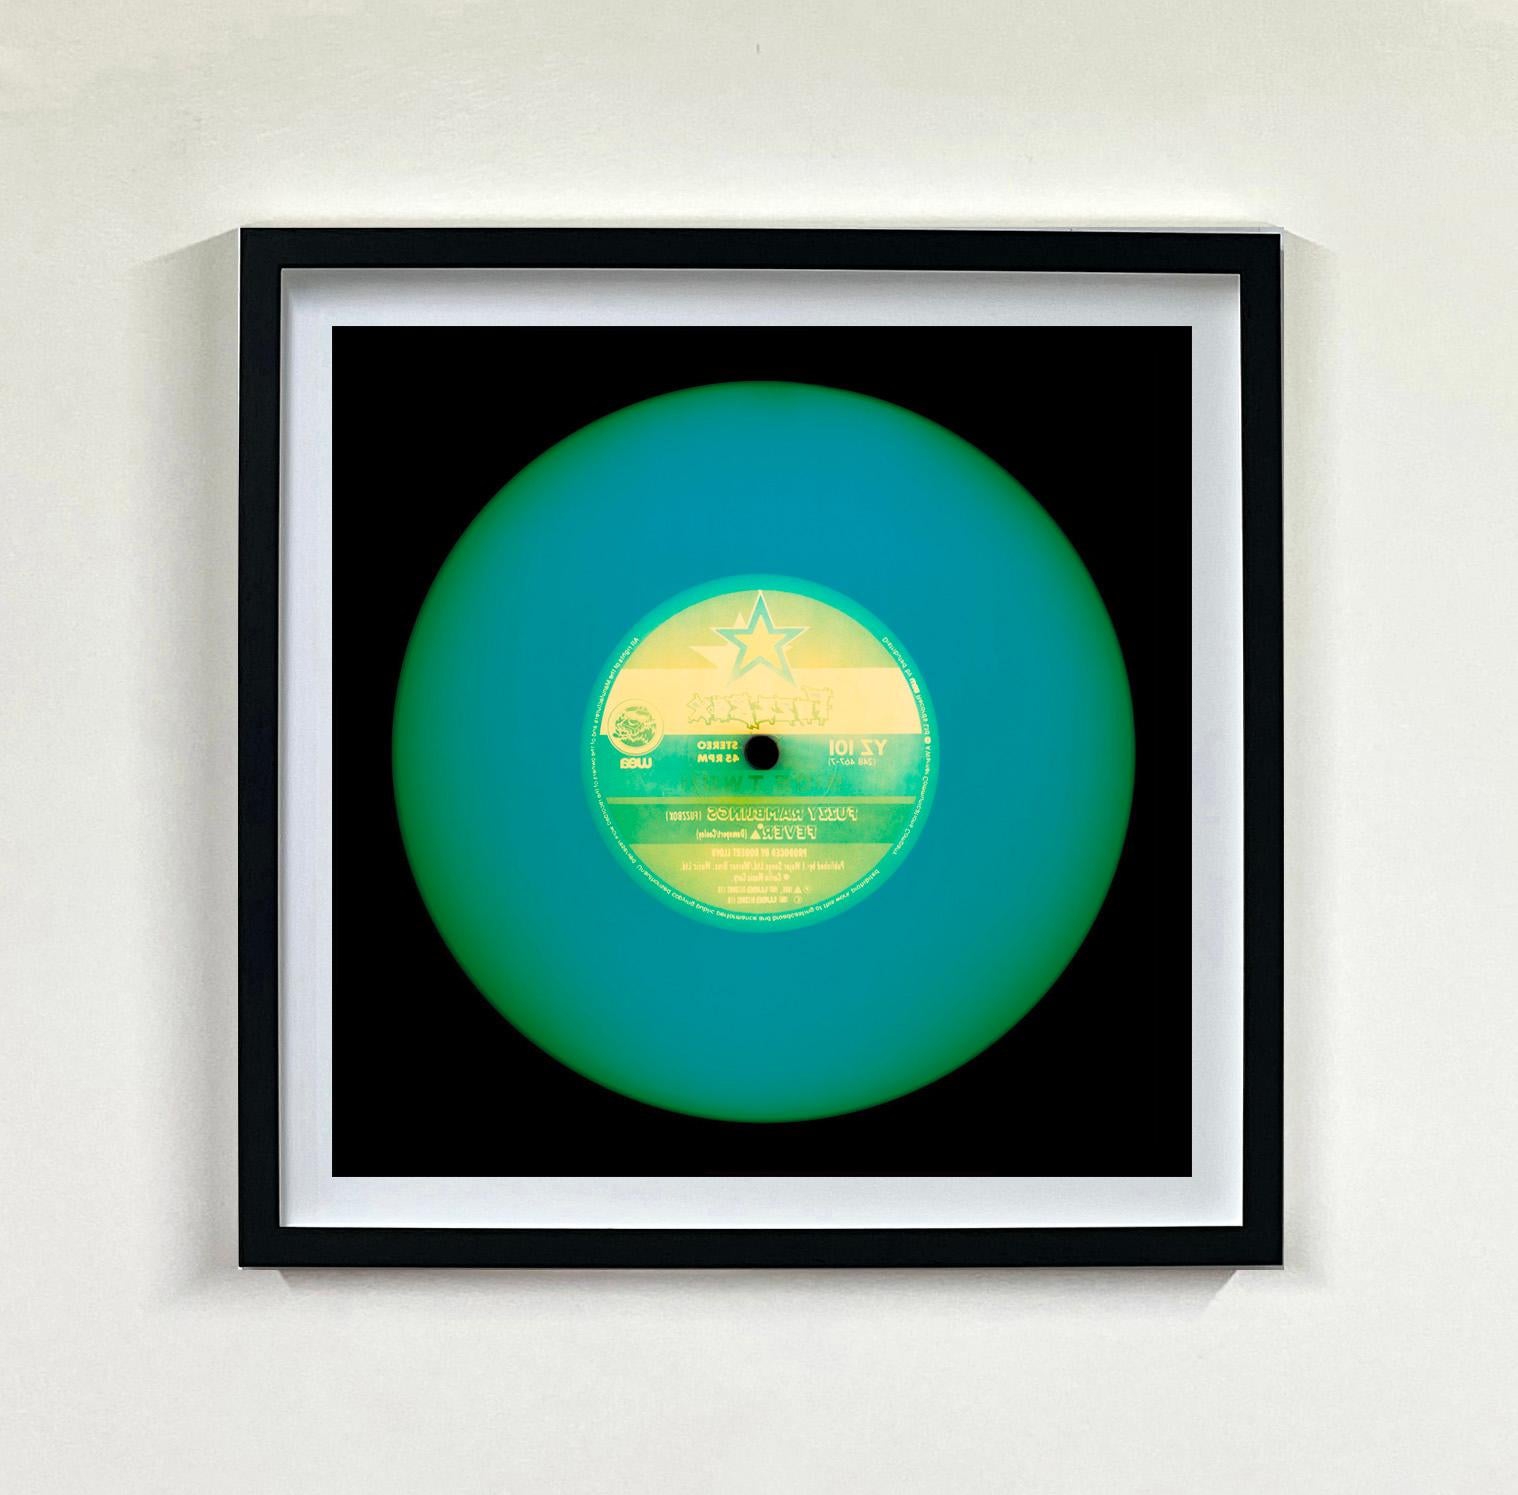 Heidler & Heeps Vinyl Collection Twenty Piece Multi-Color Installation.
Die renommierten zeitgenössischen Fotografen Richard Heeps und Natasha Heidler haben für diese wunderschöne, faszinierende Kollektion zusammengearbeitet. Ein Fest der